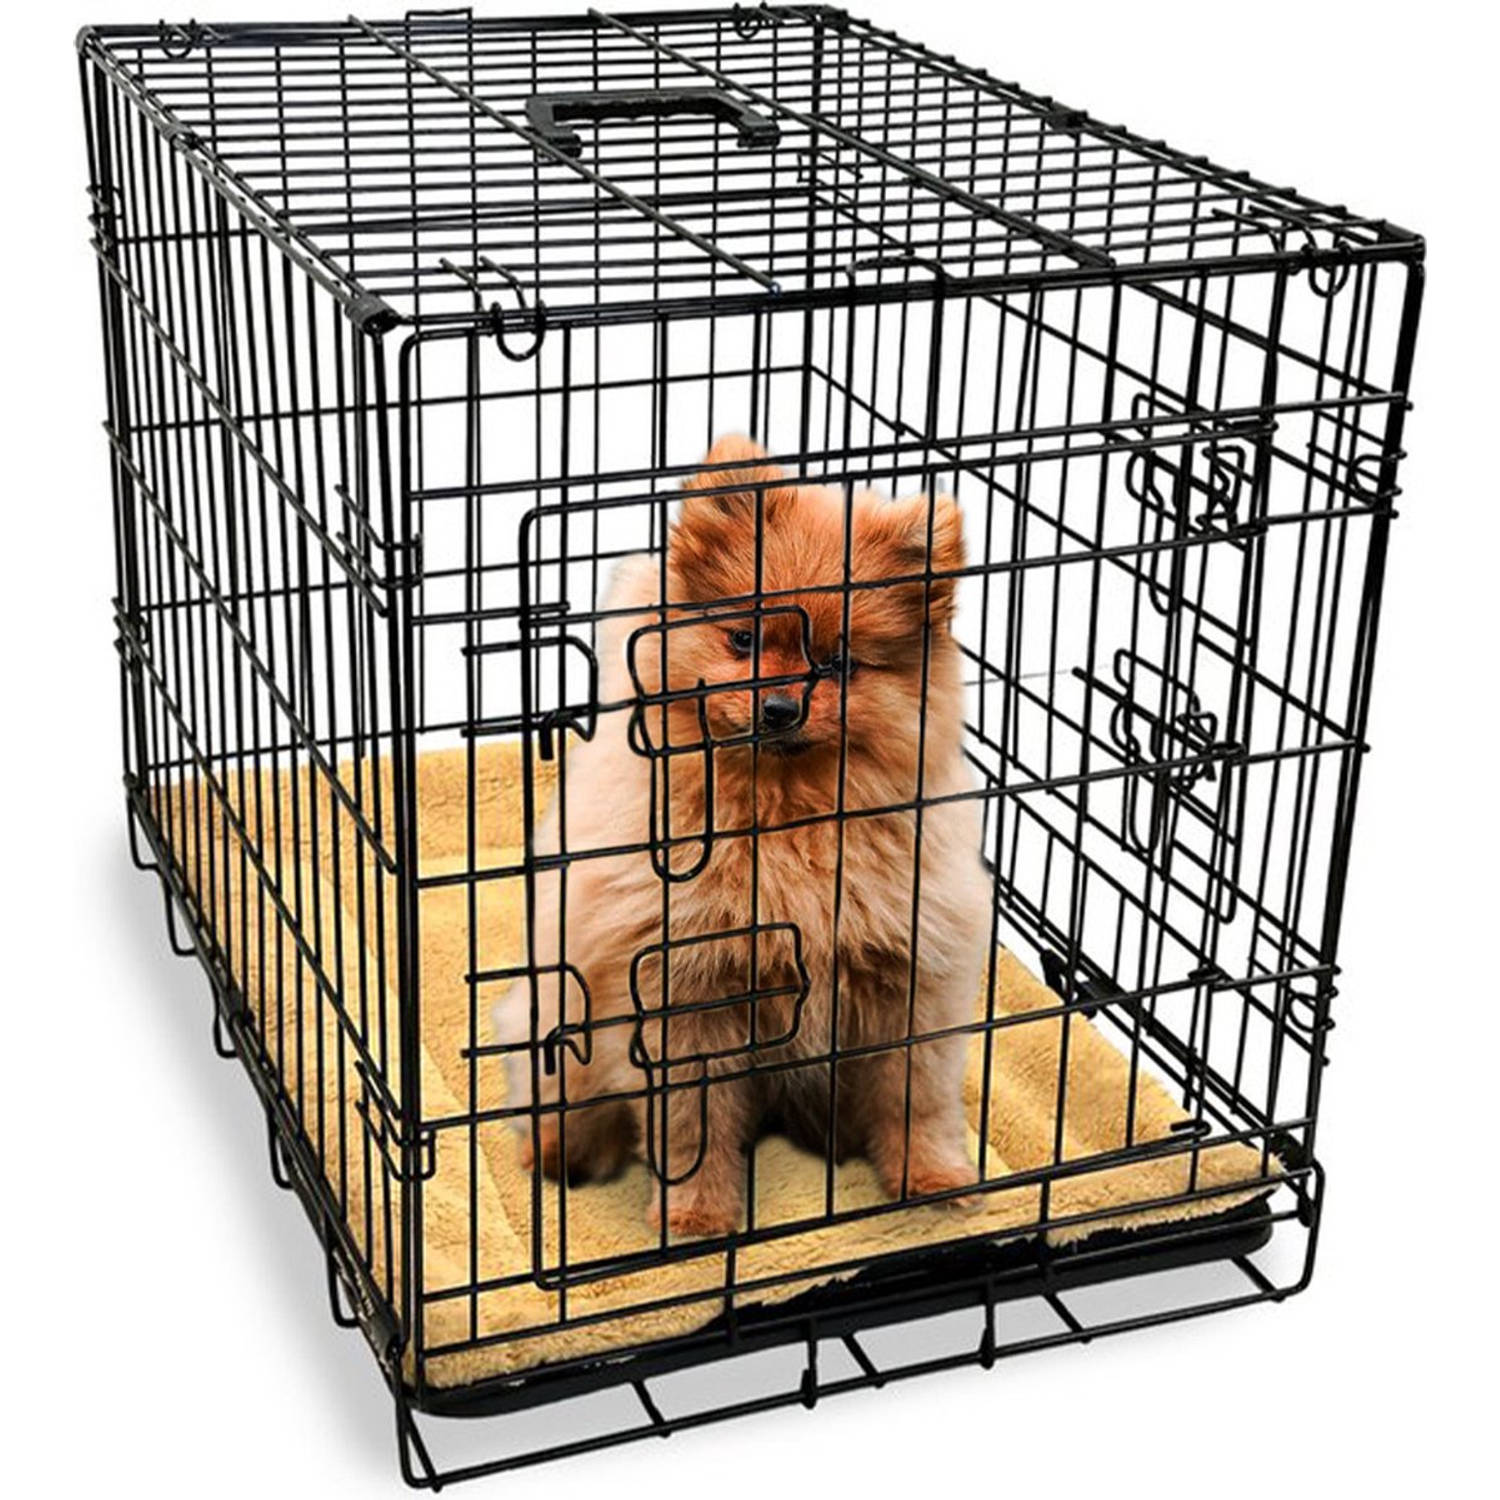 Gopets Hondenbench Opvouwbaar S - Bench - Voor Honden - Incl. Plaid - 2 Deuren - 61 x 43 x 48 cm